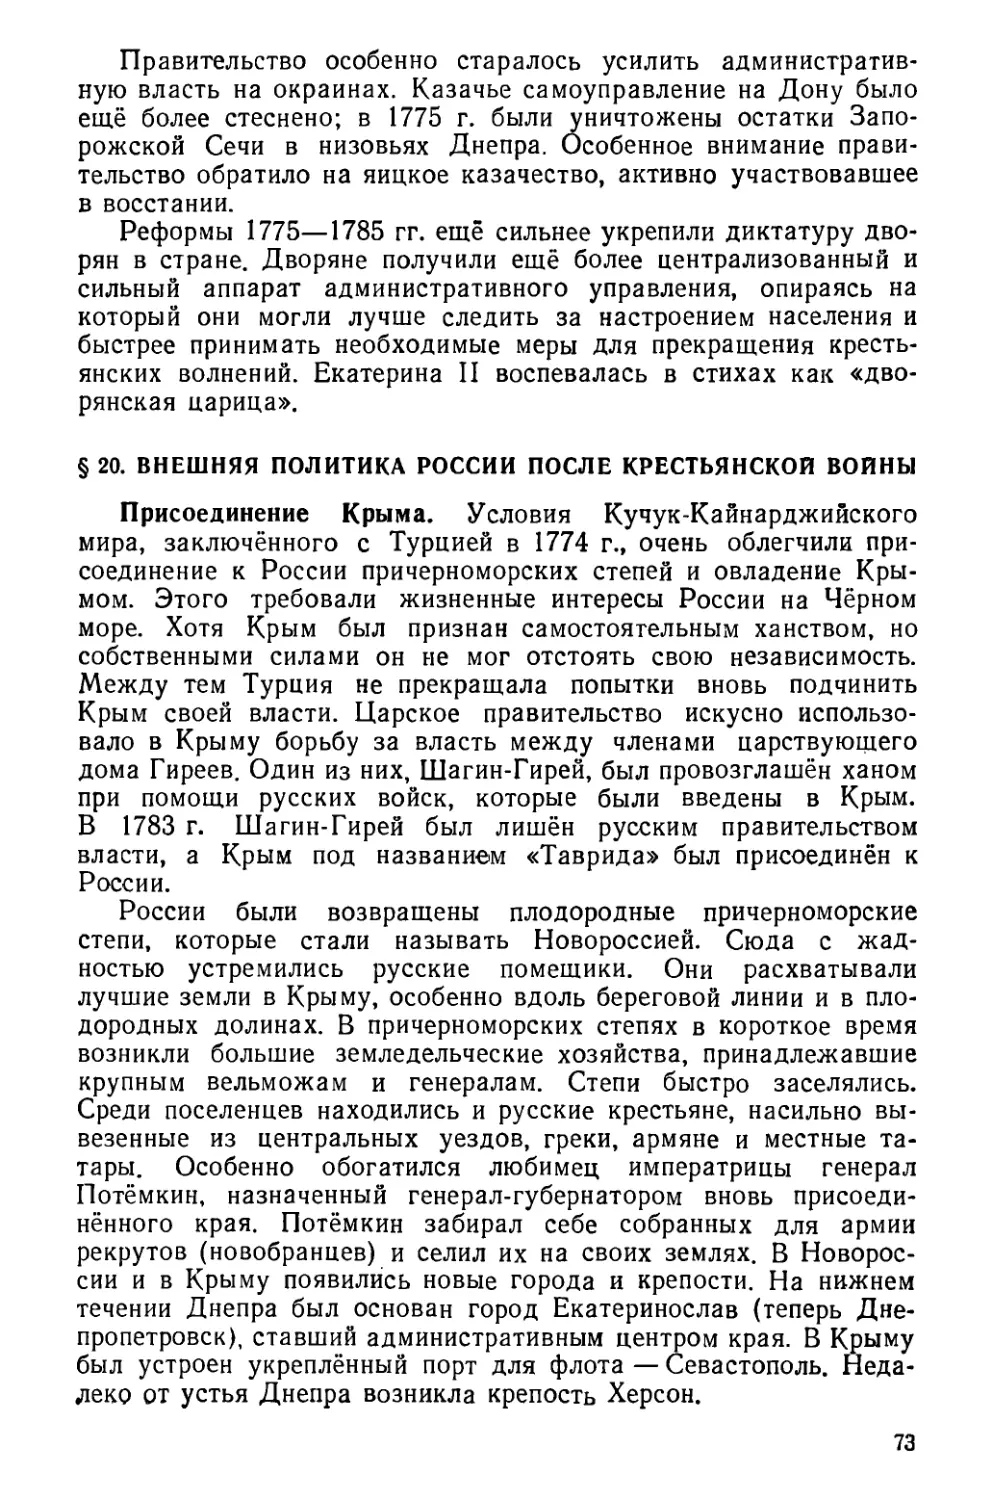 § 20. Внешняя политика России после крестьянской войны